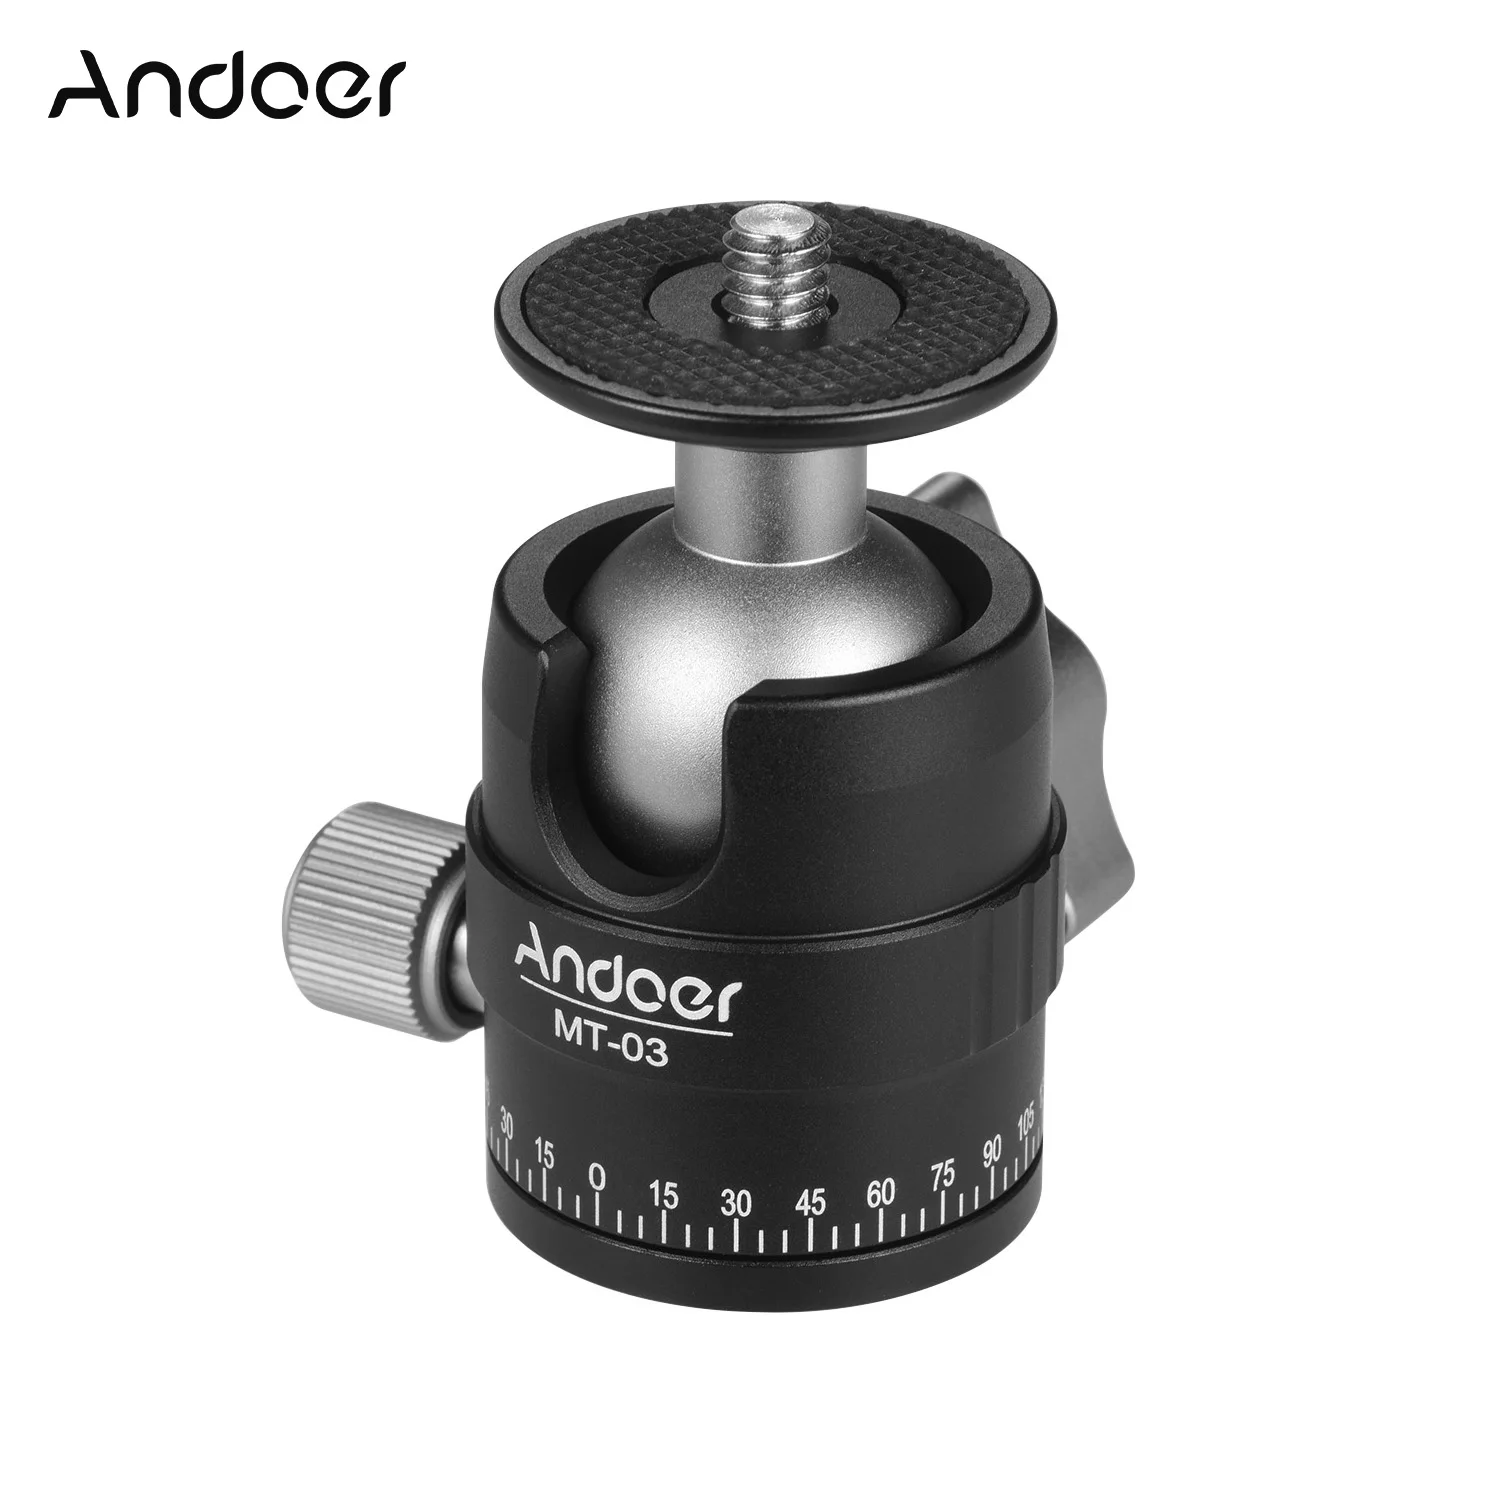 Andoer MT-03 мини шаровая Головка DSLR камера штатив монопод шаровая Головка с u-образной насечкой Максимальная нагрузка 5 кг 11 фунтов аксессуары для фотографирования